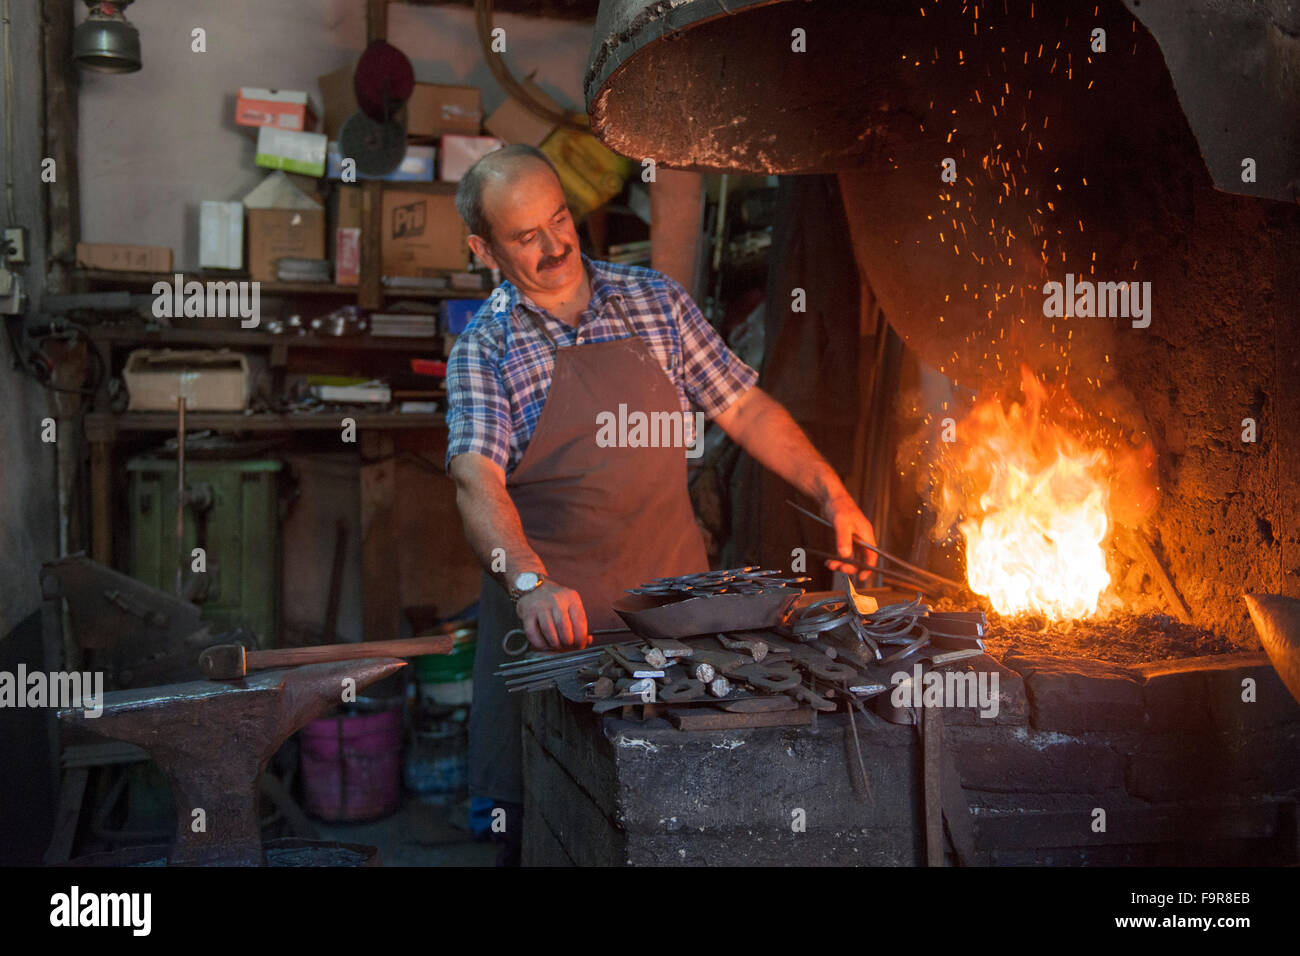 Türkei, westliche Schwarzmeerküste, Safranbolu,  Schmiede im Handwerkerviertel Stock Photo